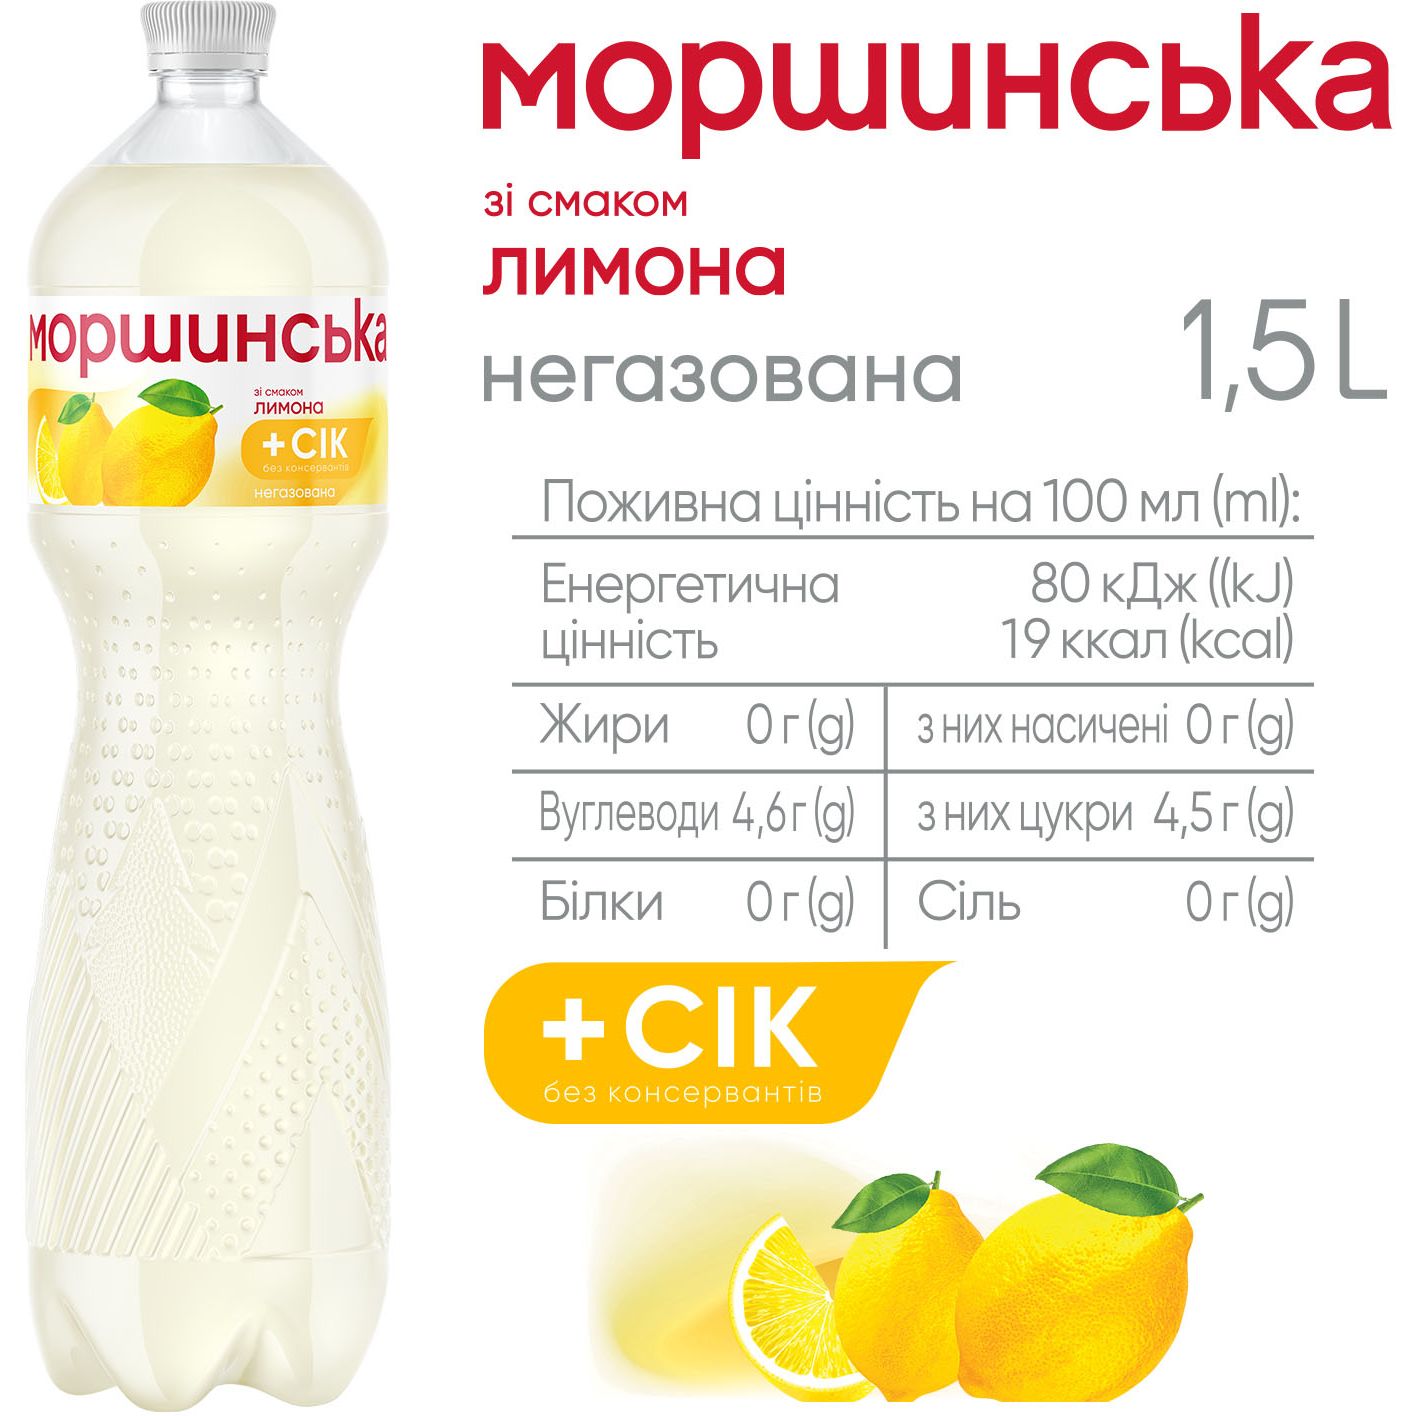 Напиток Моршинская со вкусом лимона негазированный 1.5 л - фото 3